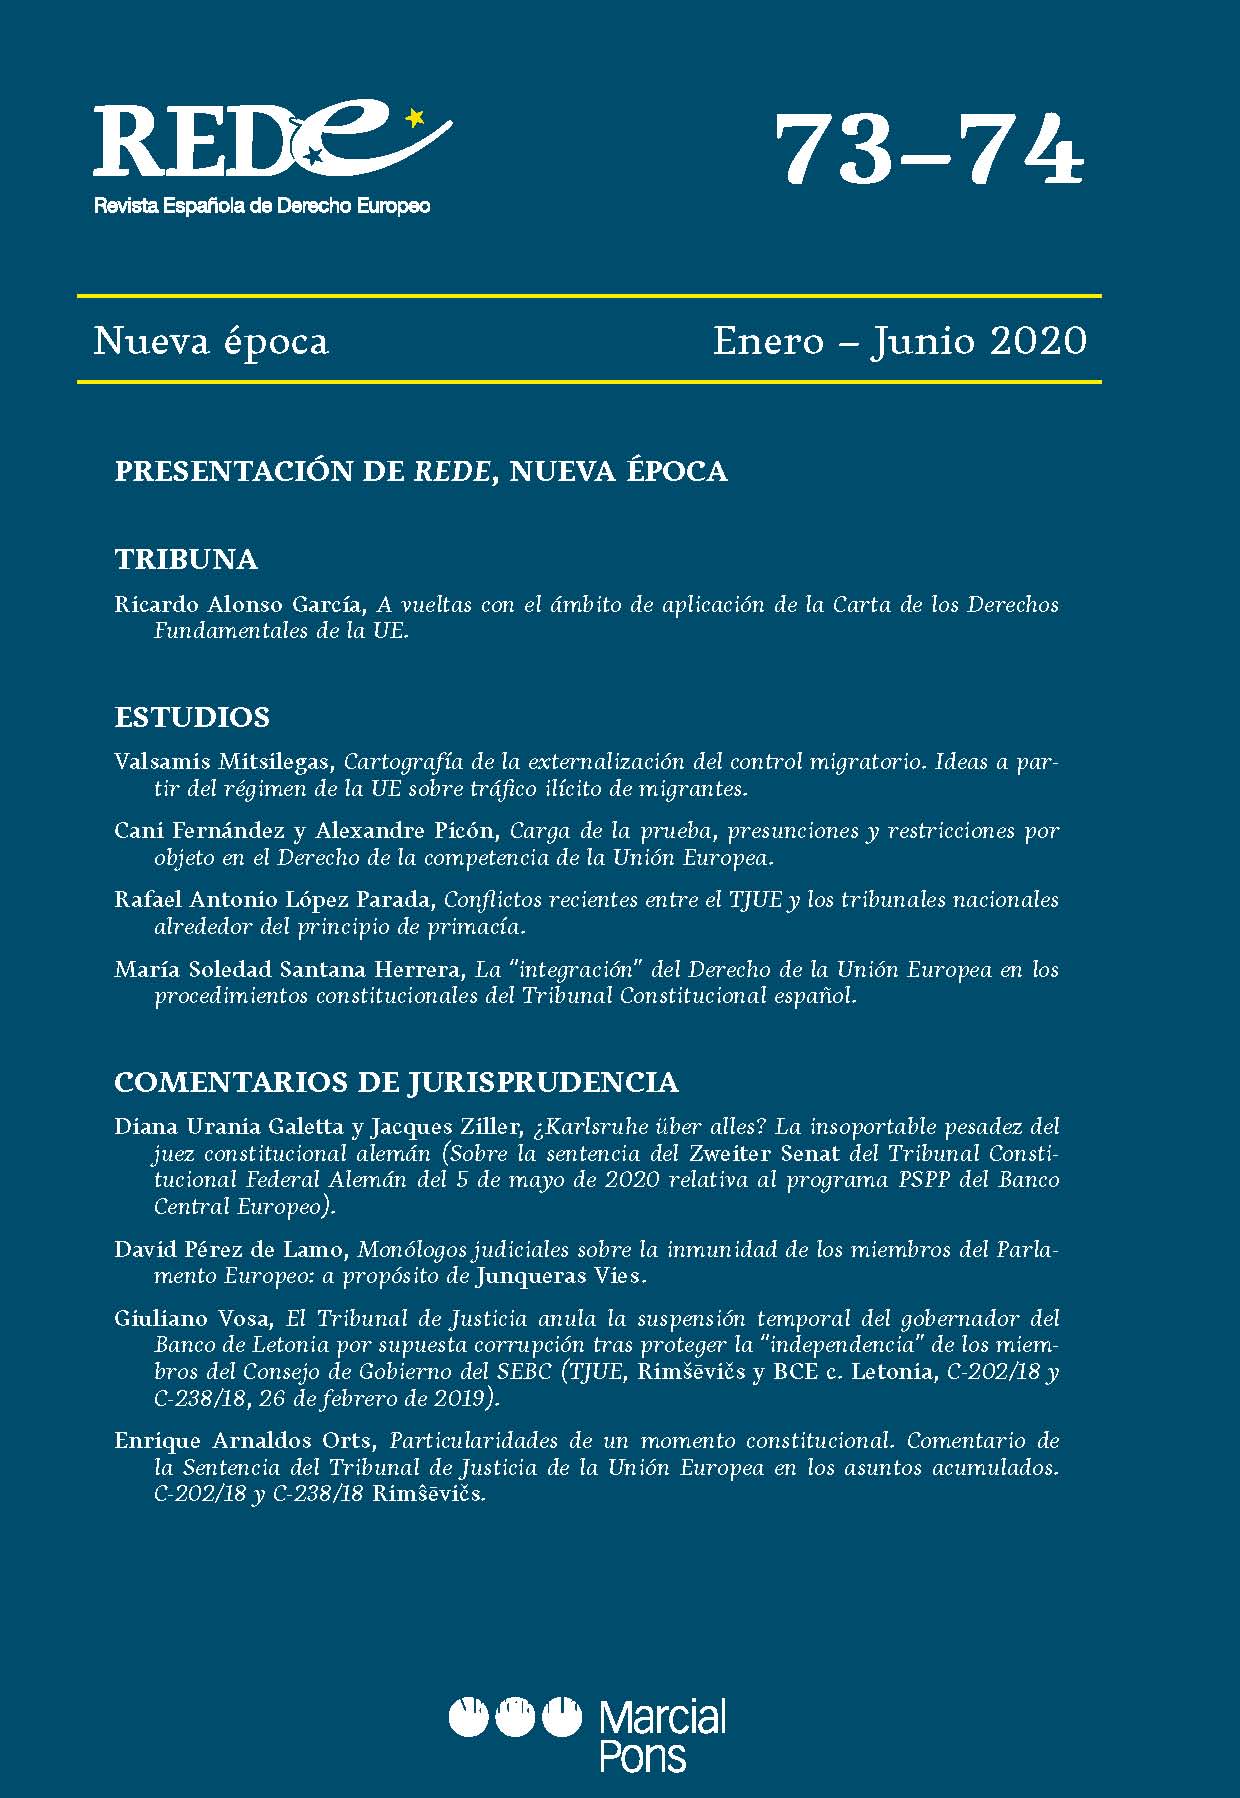 Revista Española de Derecho Europeo, Nº 73-74, Nueva época Enero-Junio 2020